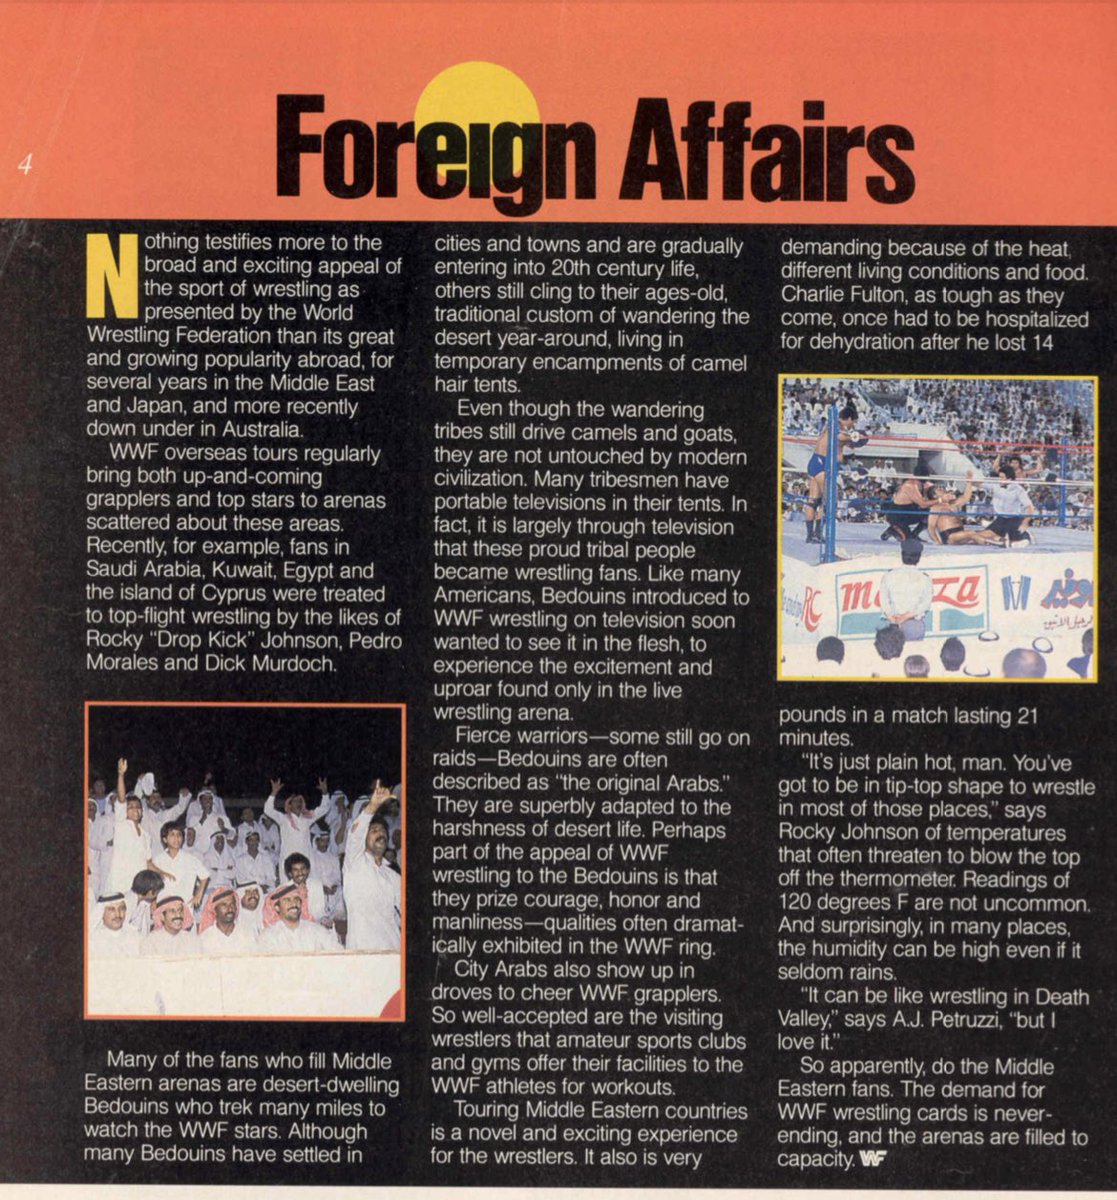 WWF travels to Saudi Arabia in 1985